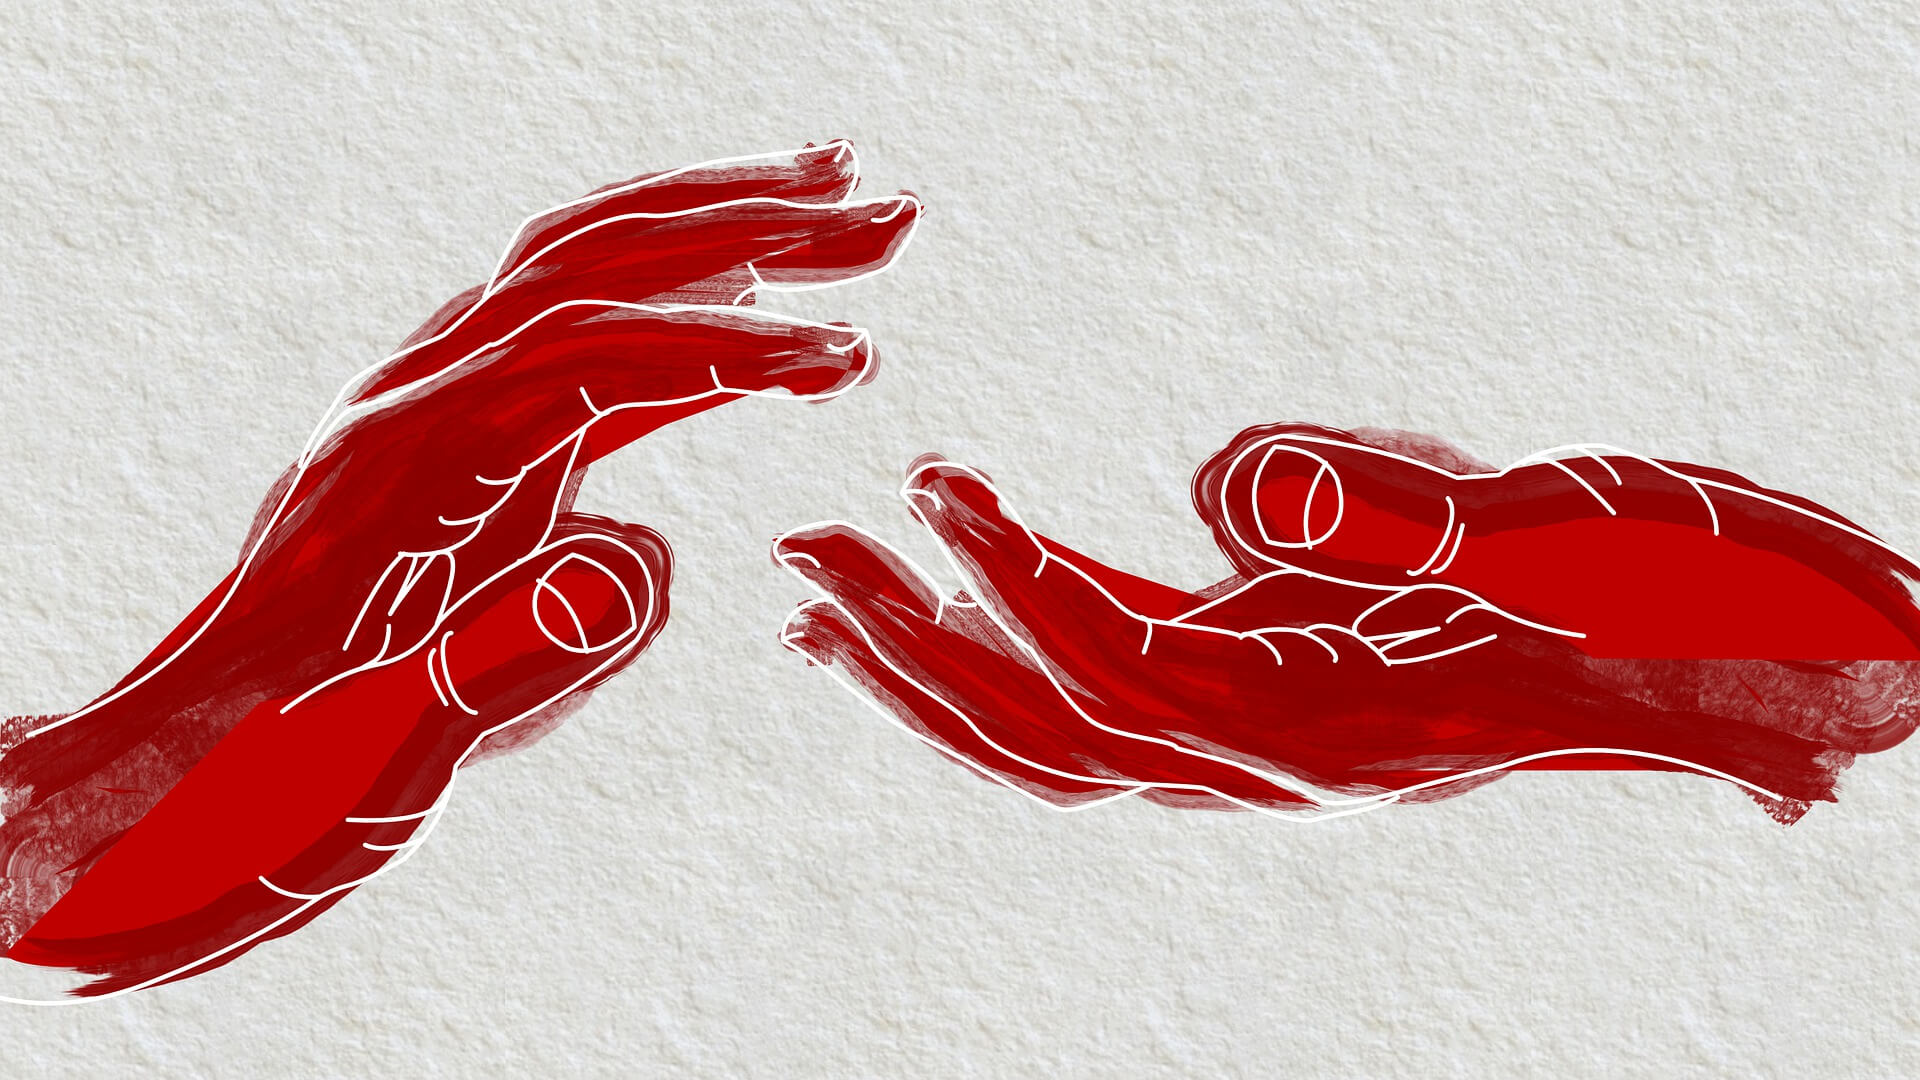 Ilustracja podawania ręki drugiej osobie